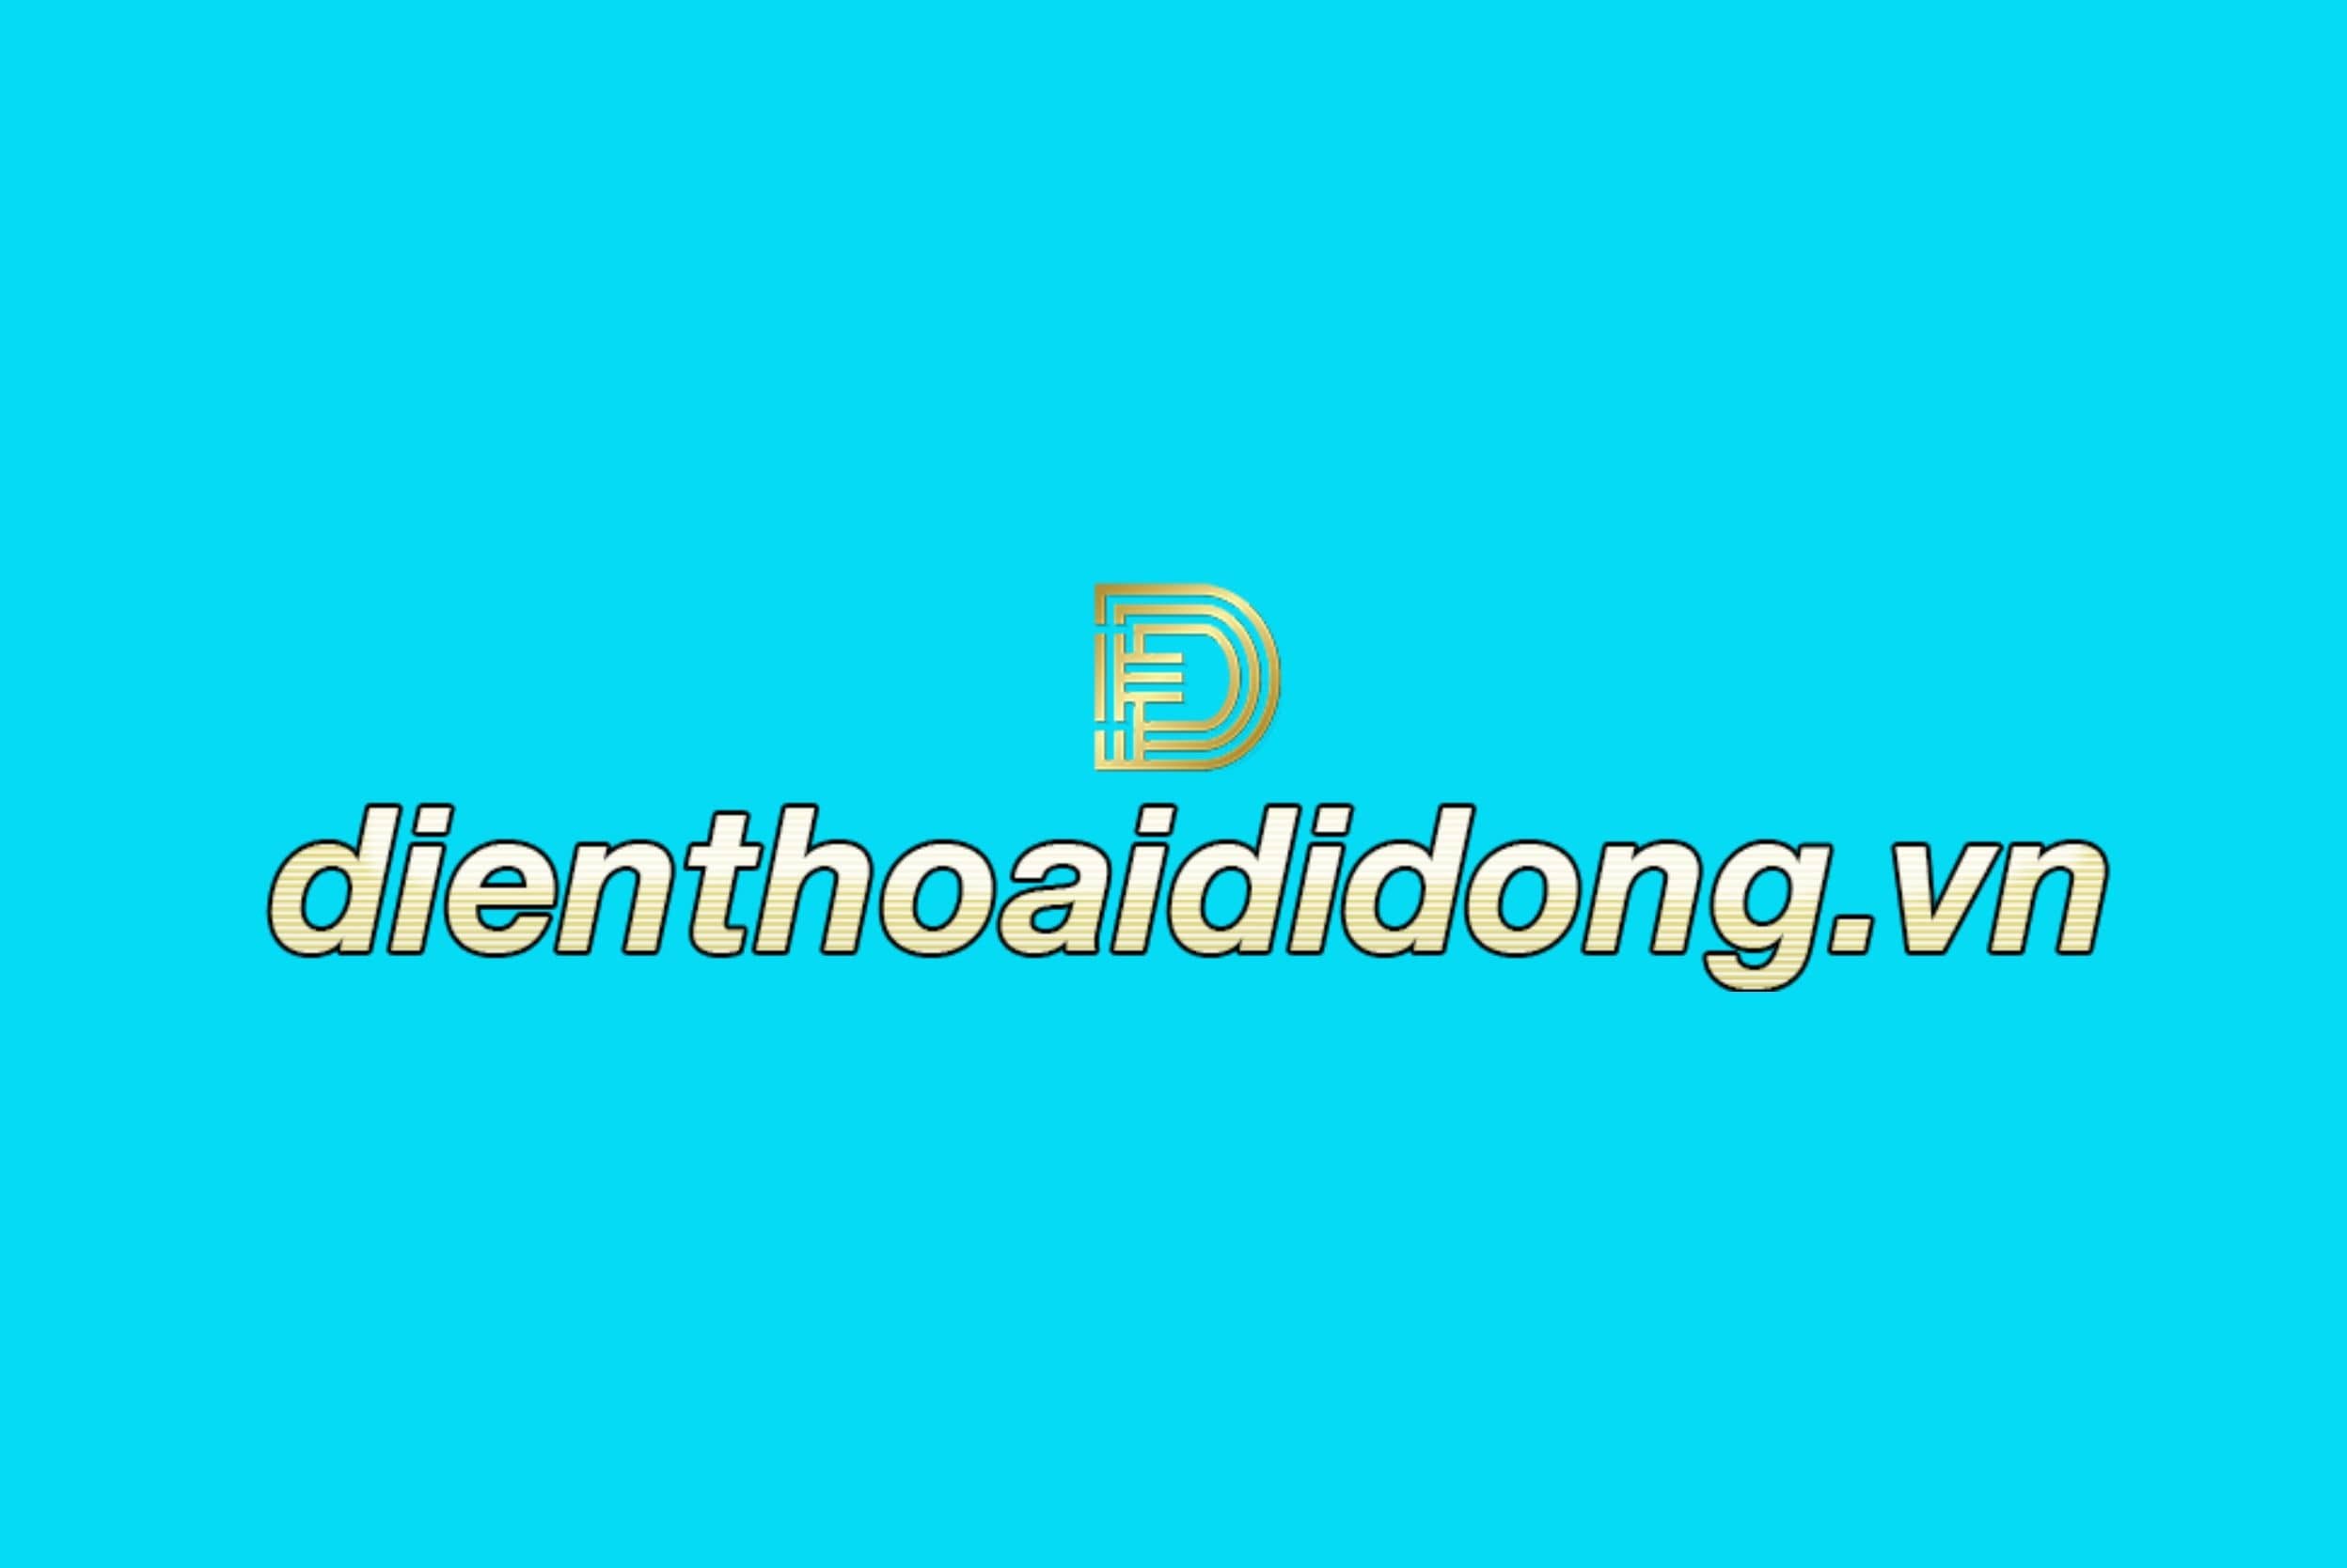 dienthoaididong.vn-logo